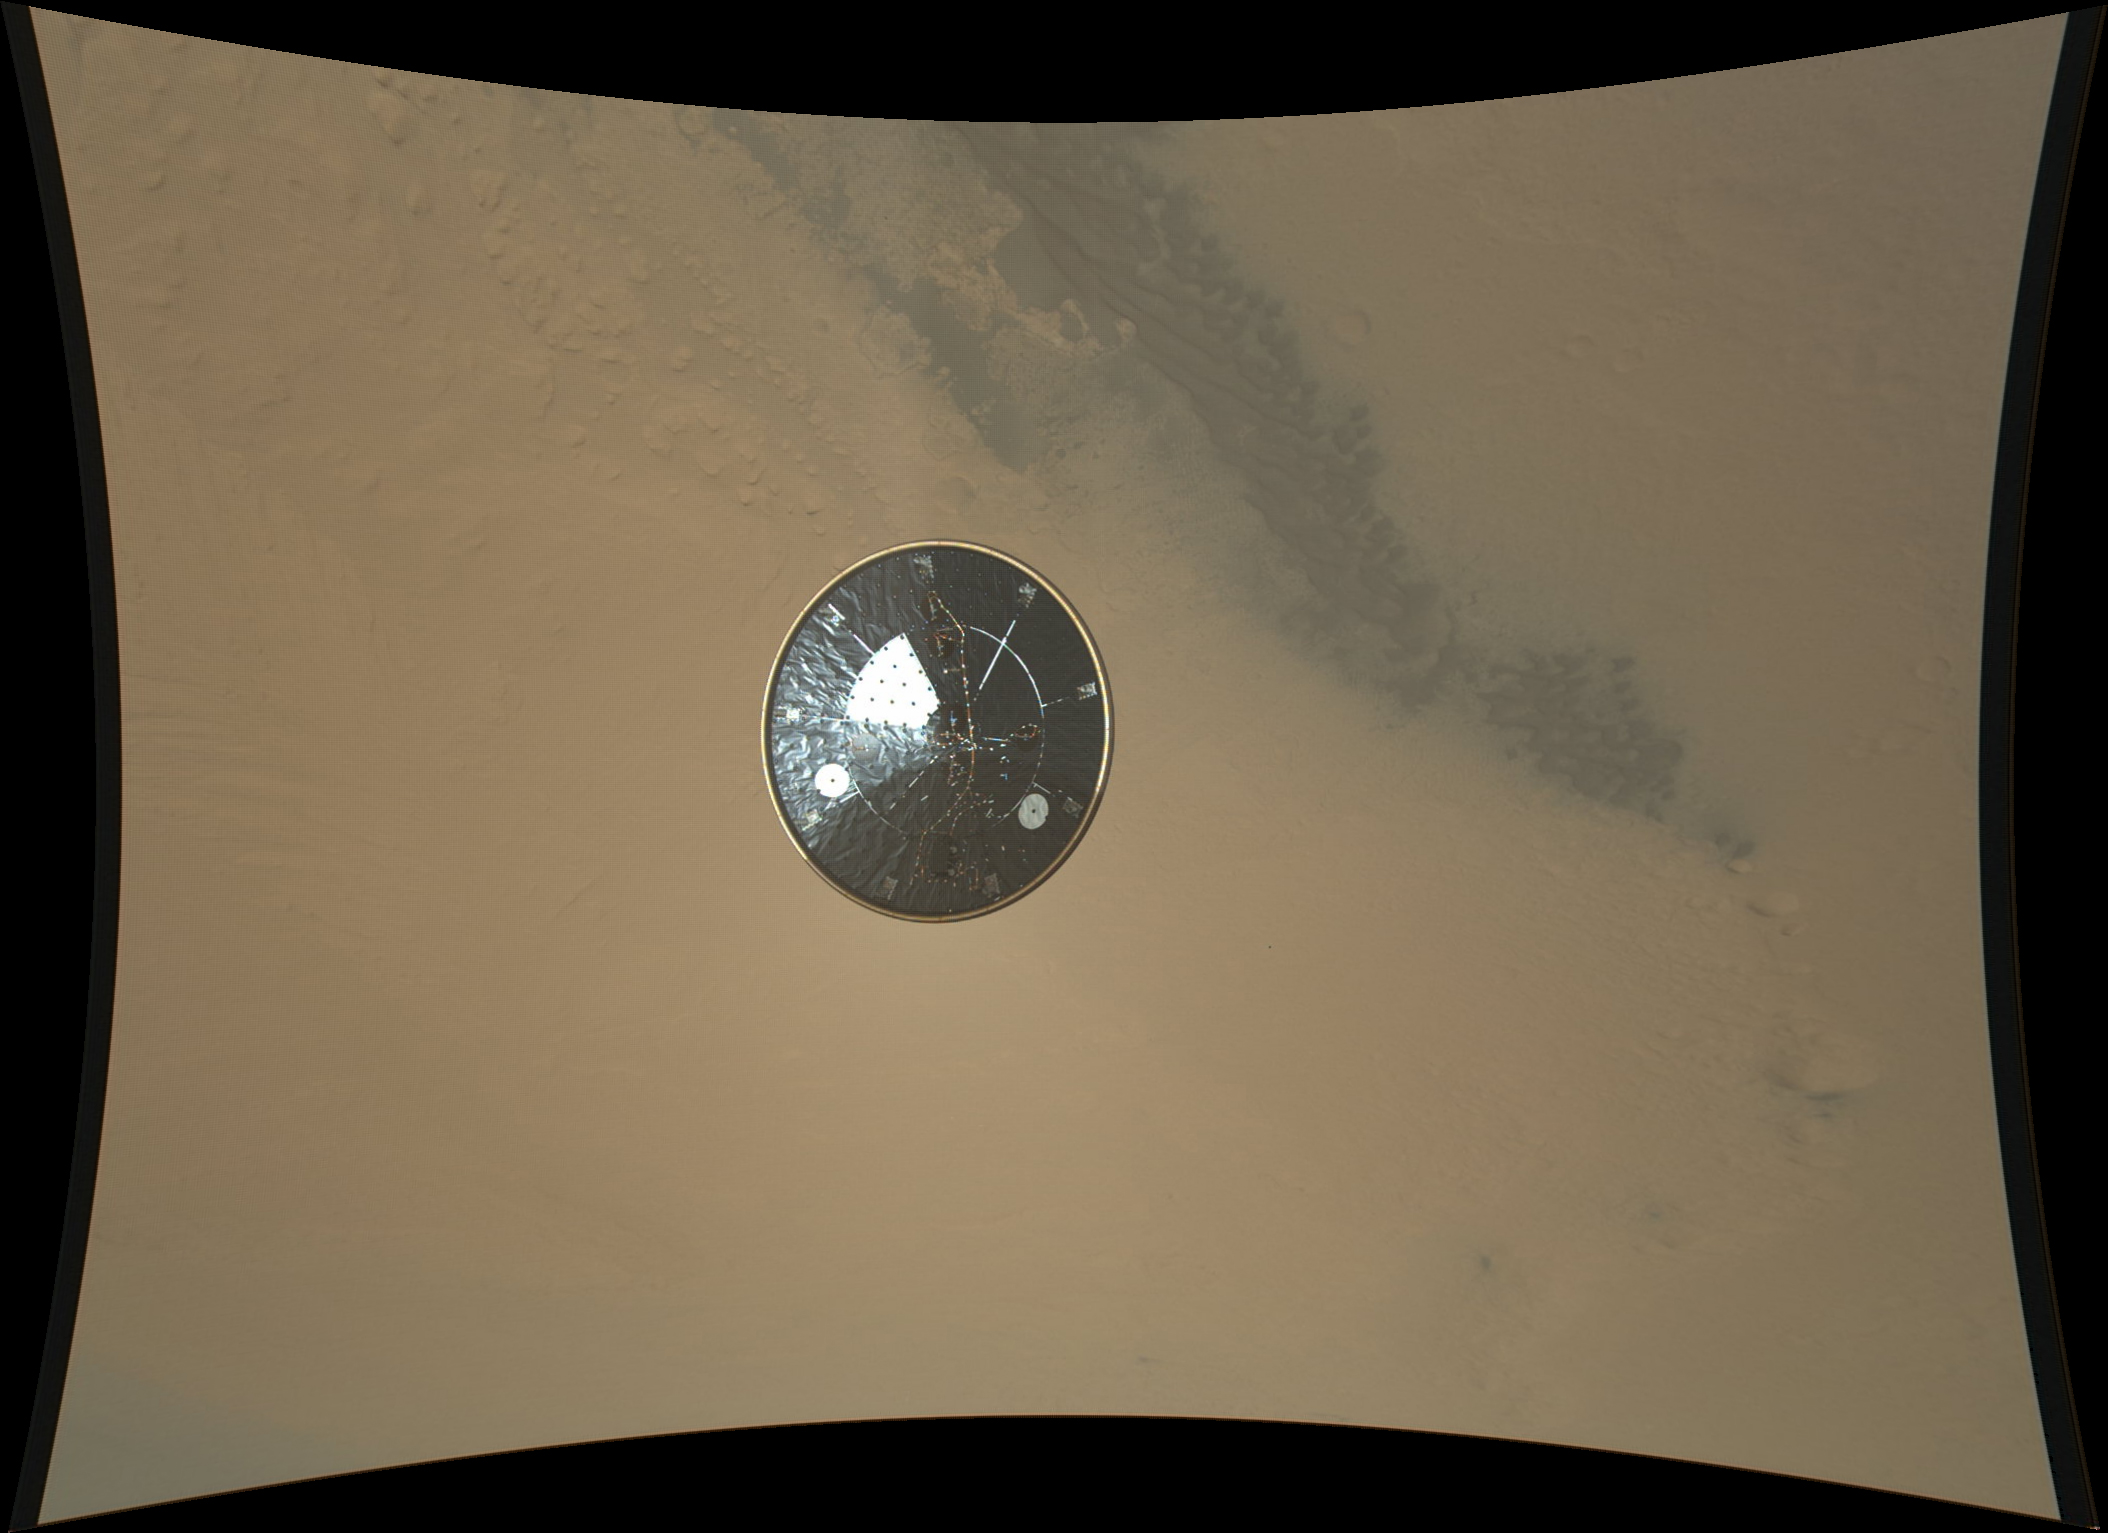 Le bouclier thermique de Curiosity photographié par Mardi